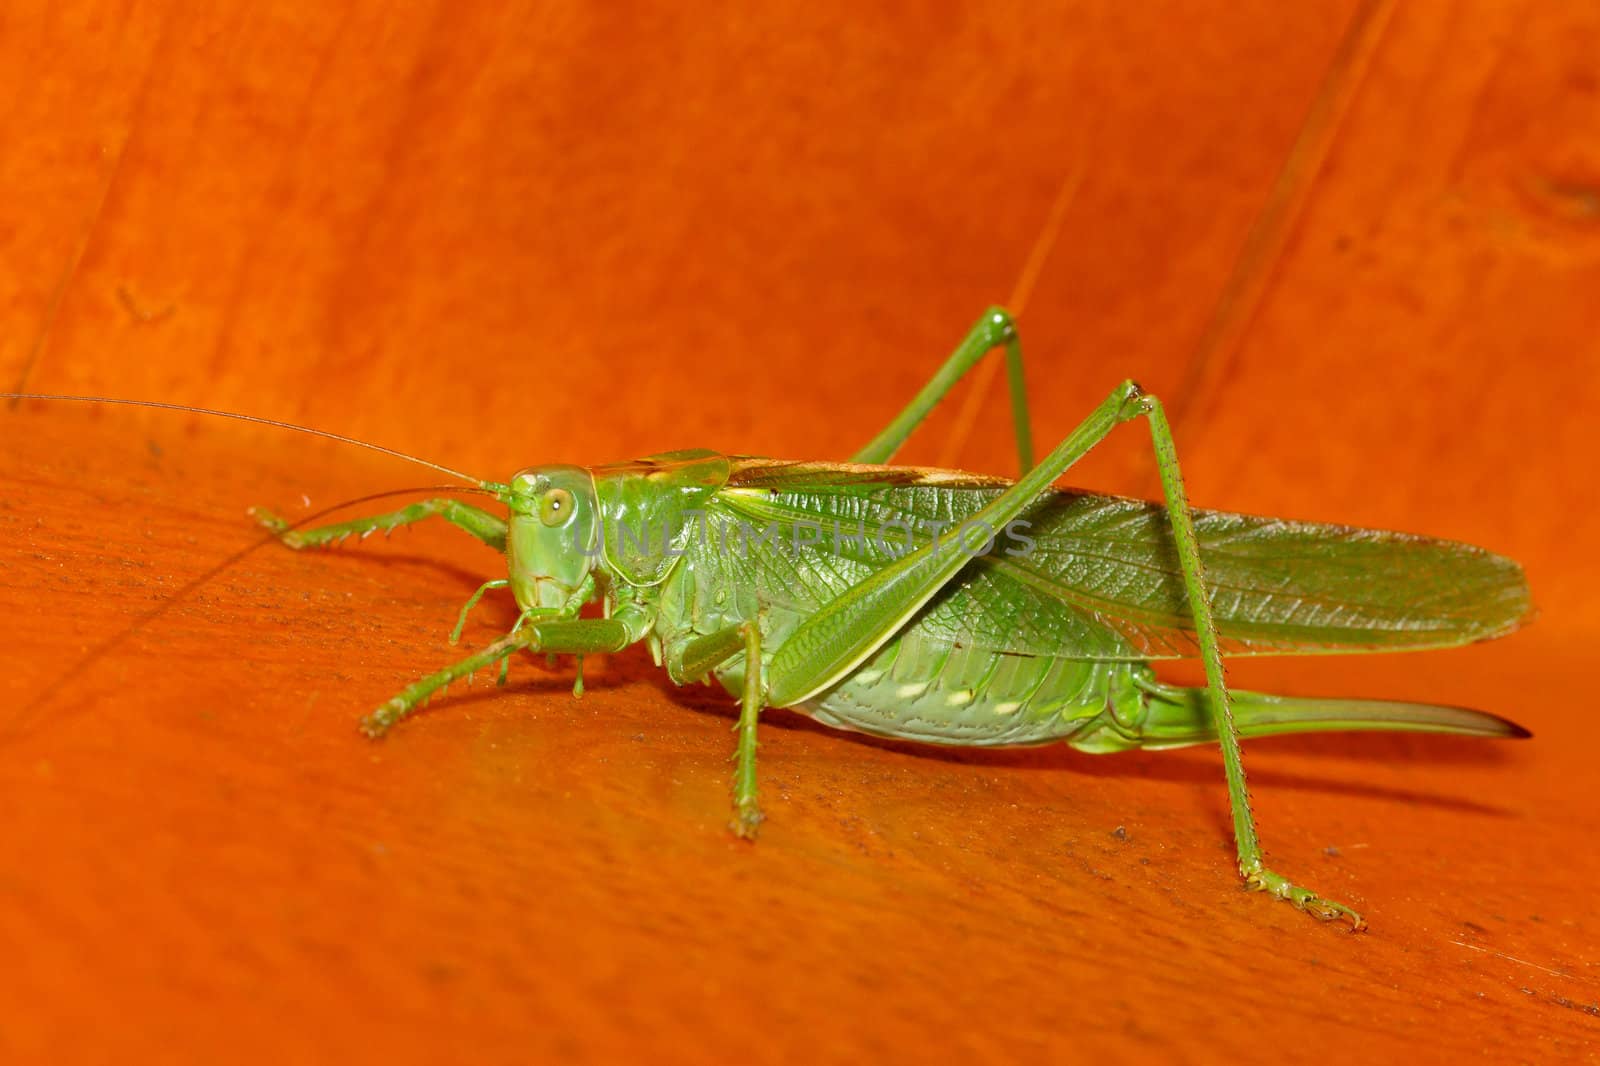 A grasshopper by michaklootwijk